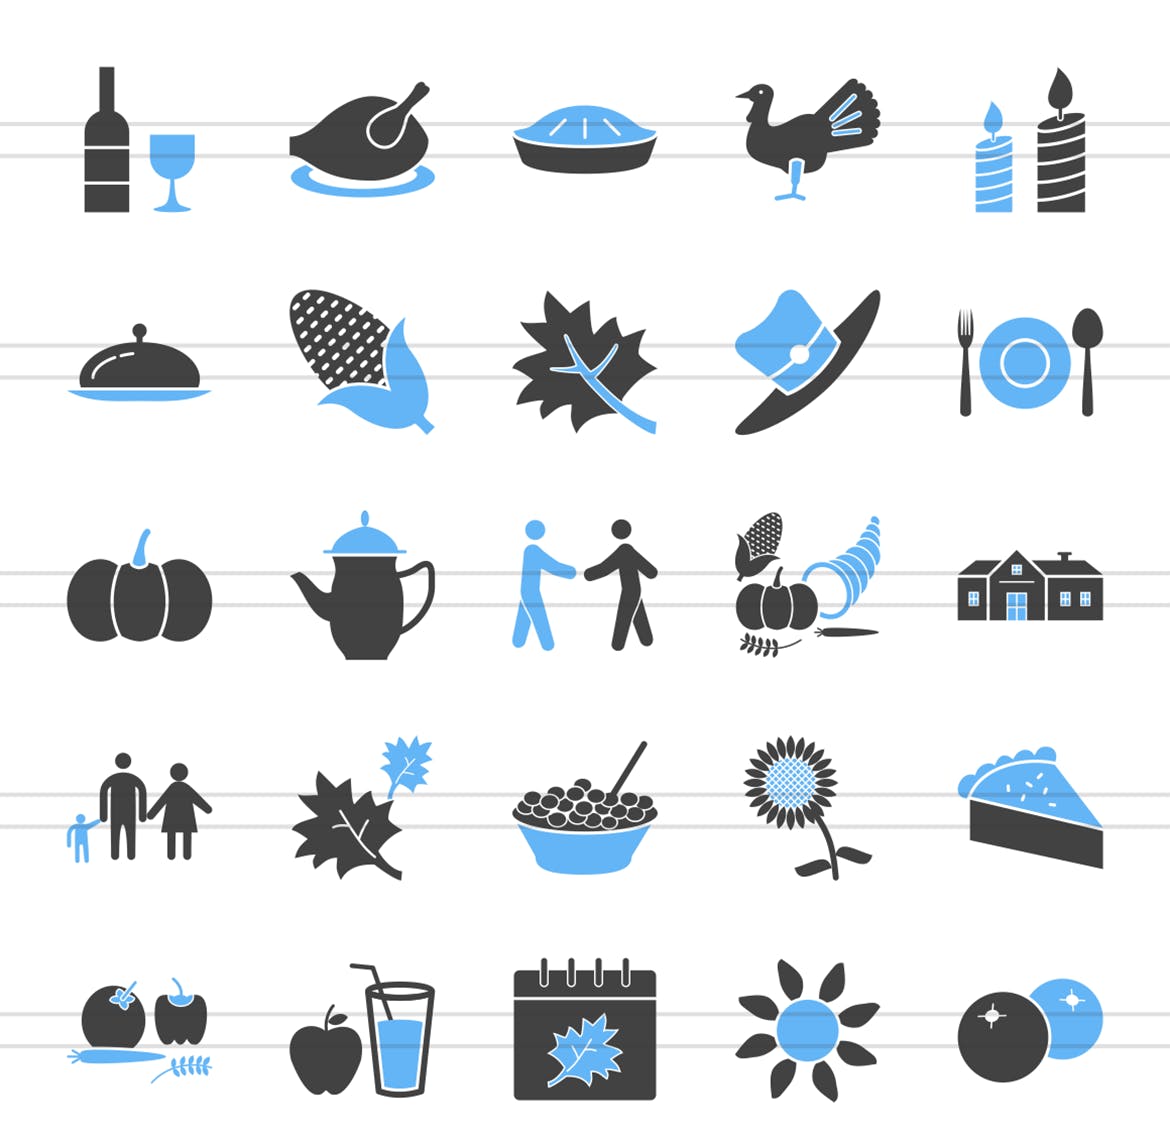 50枚感恩节主题蓝黑色矢量图标素材 50 Thanksgiving Blue & Black Icons插图(1)